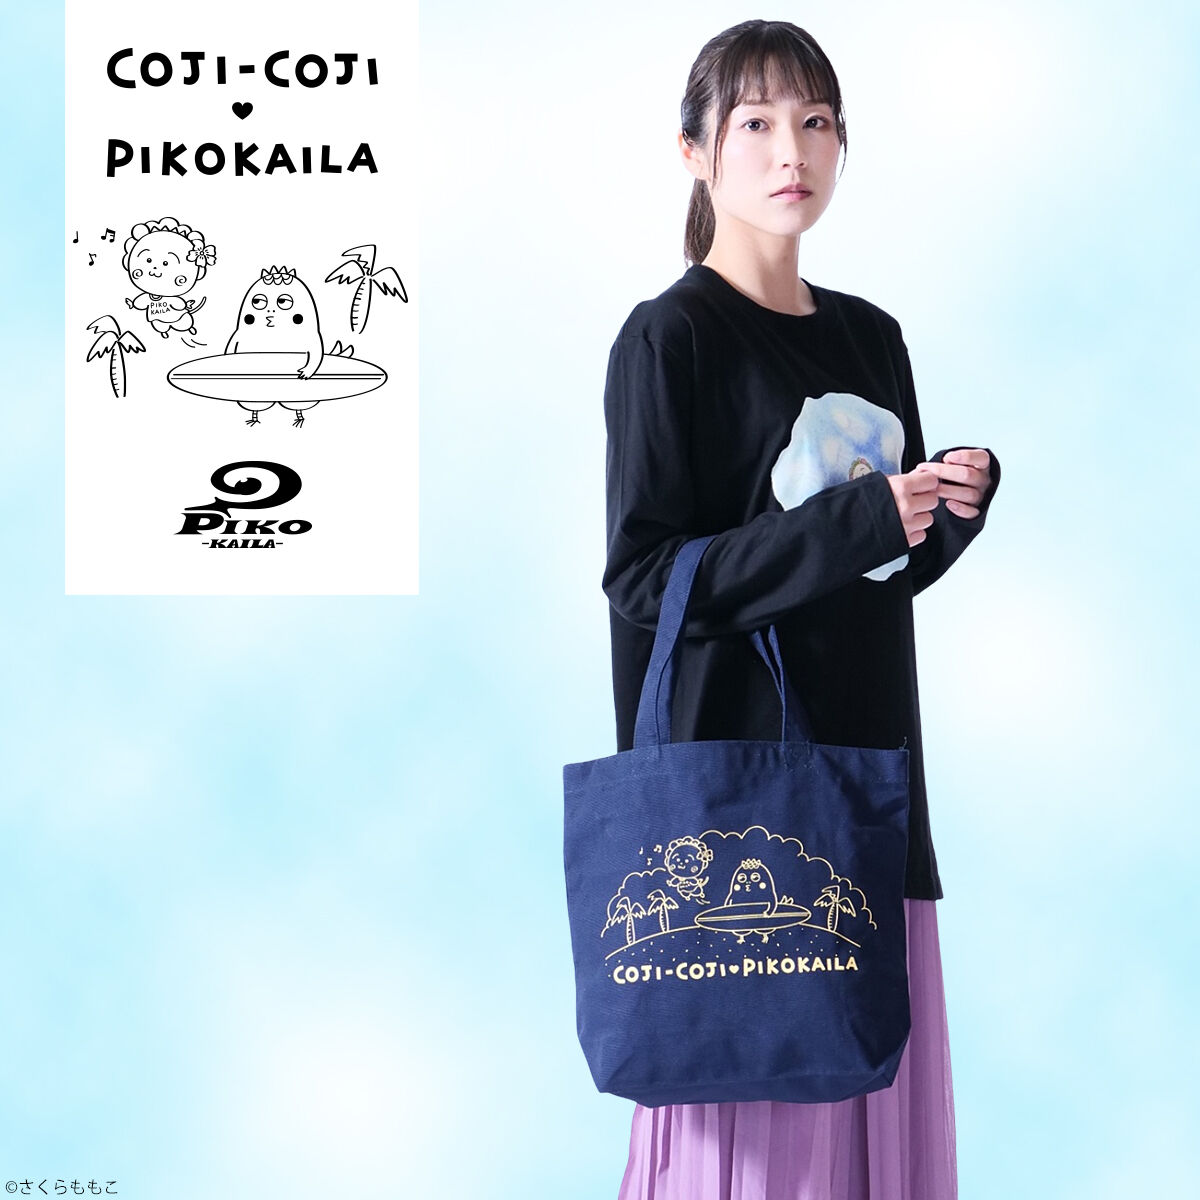 コジコジ×PIKO KAILAコラボ トートバッグ | コジコジ ファッション